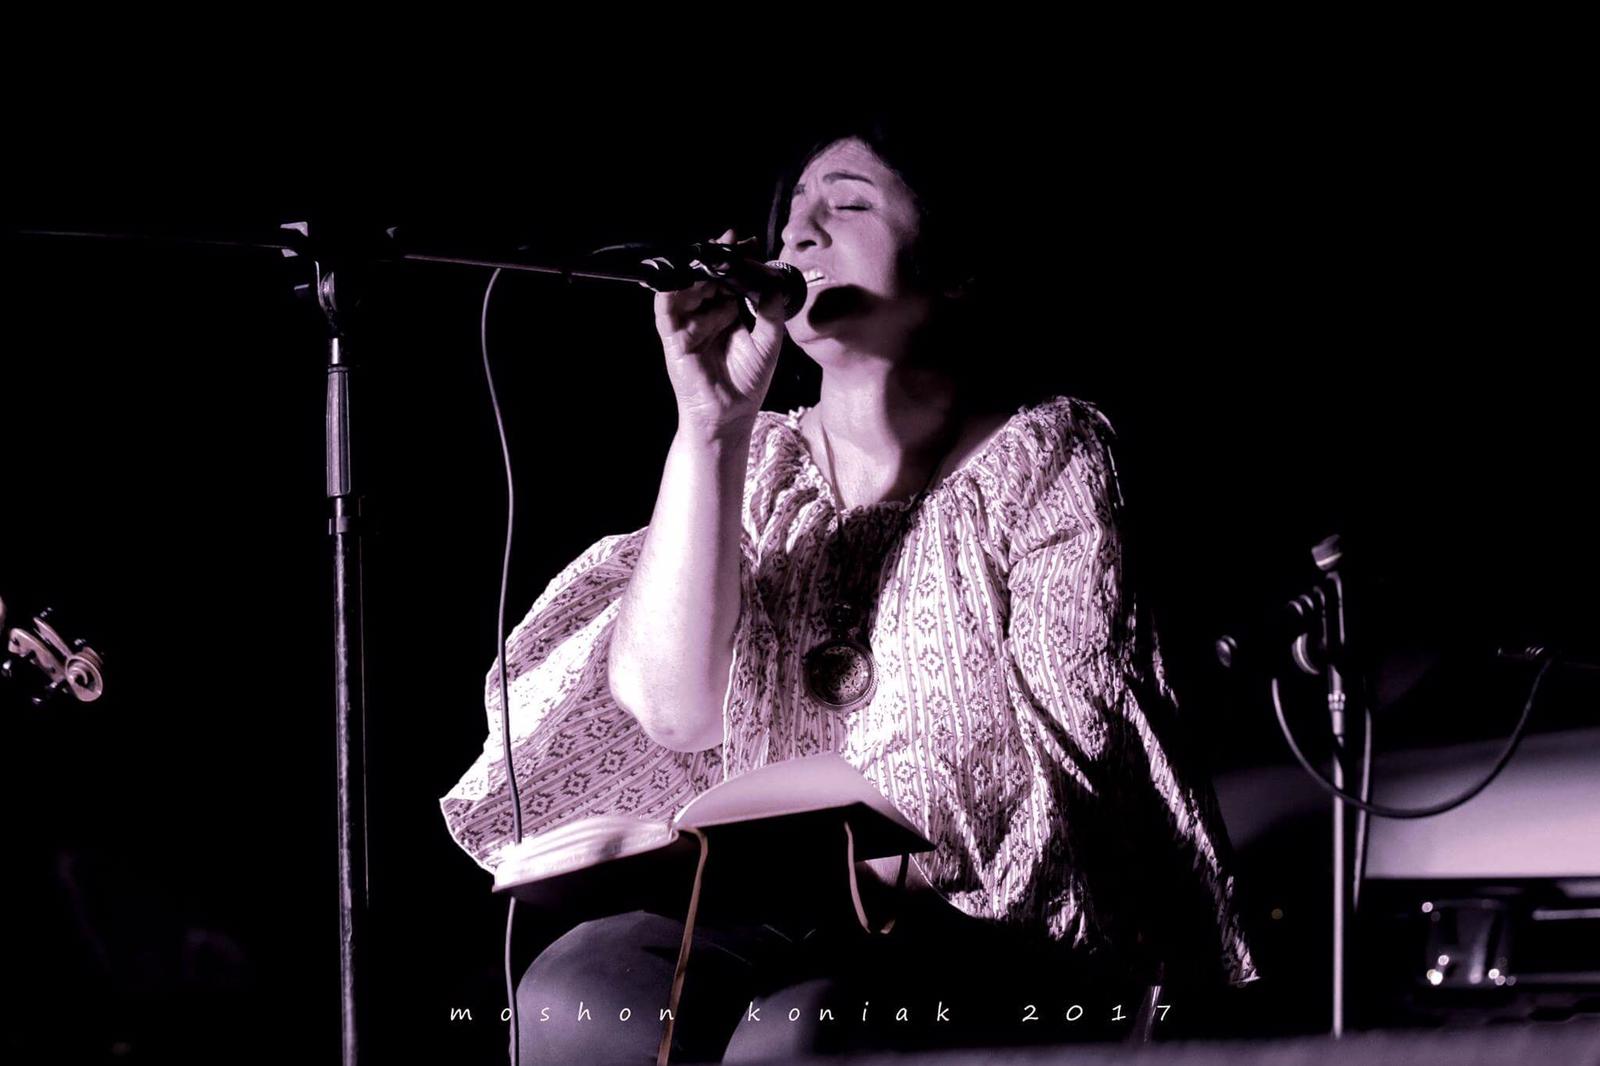 דליה פז'נד, זמרת ויוצרת בפרסית מהמרכז למוסיקה מן המזרח, מודאגת מאוד ממצבם של היהודים באיראן